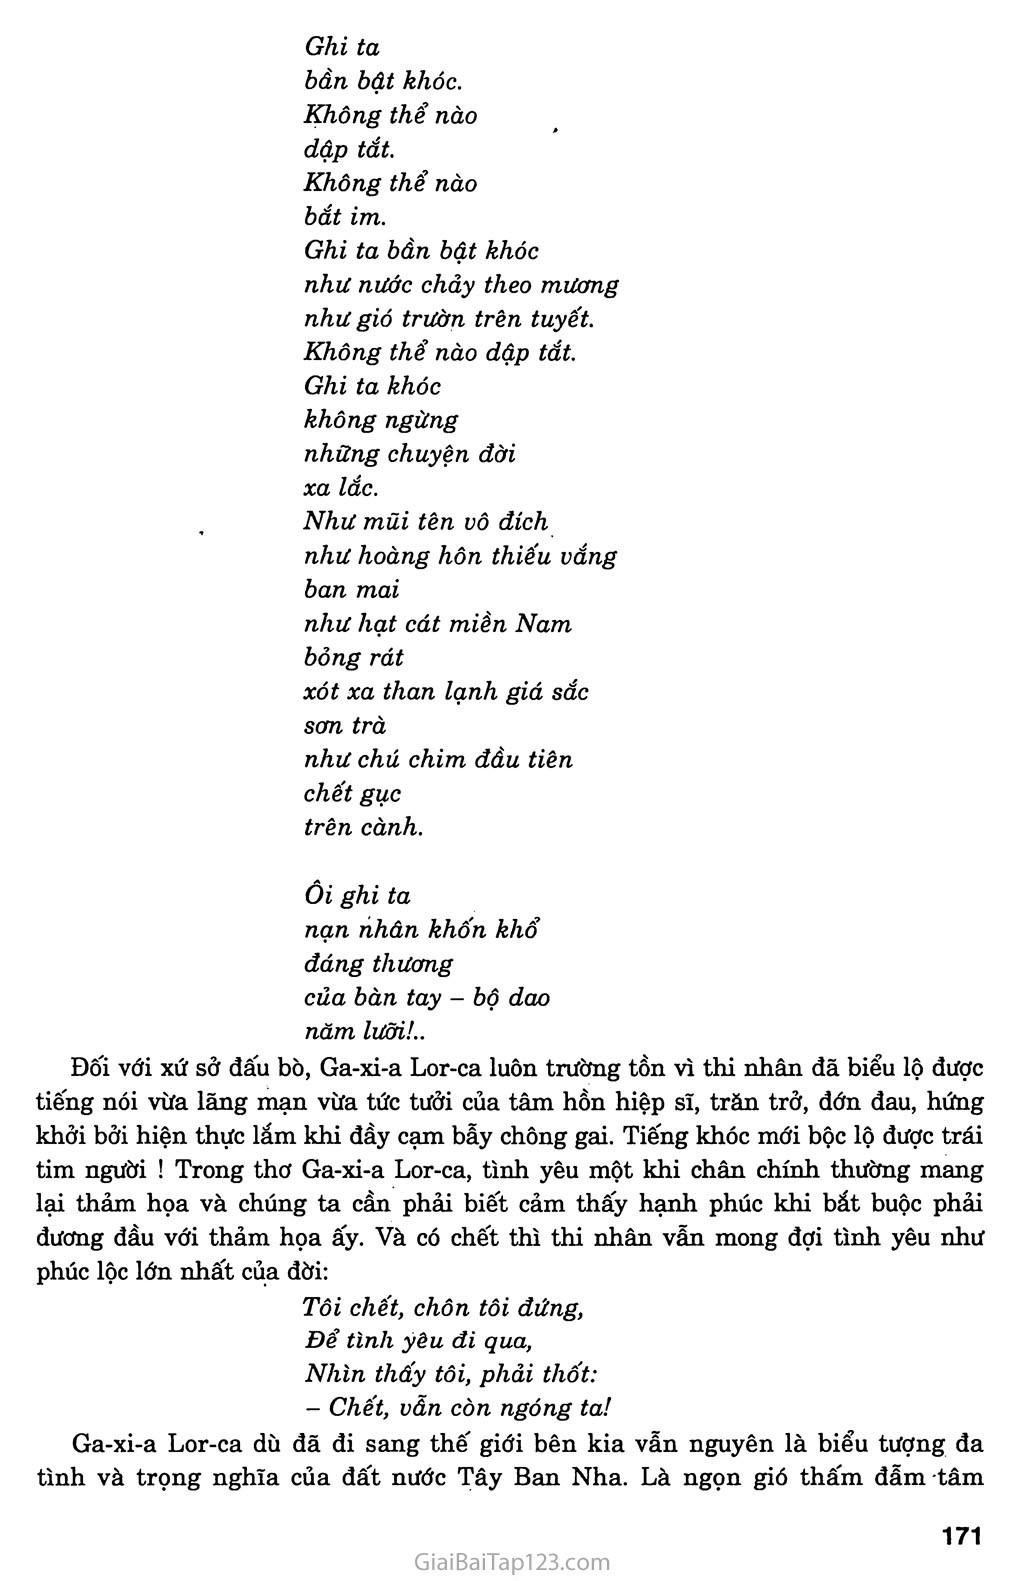 Đàn ghi ta của Lor - Ca (Thanh Thảo, 1985) trang 6